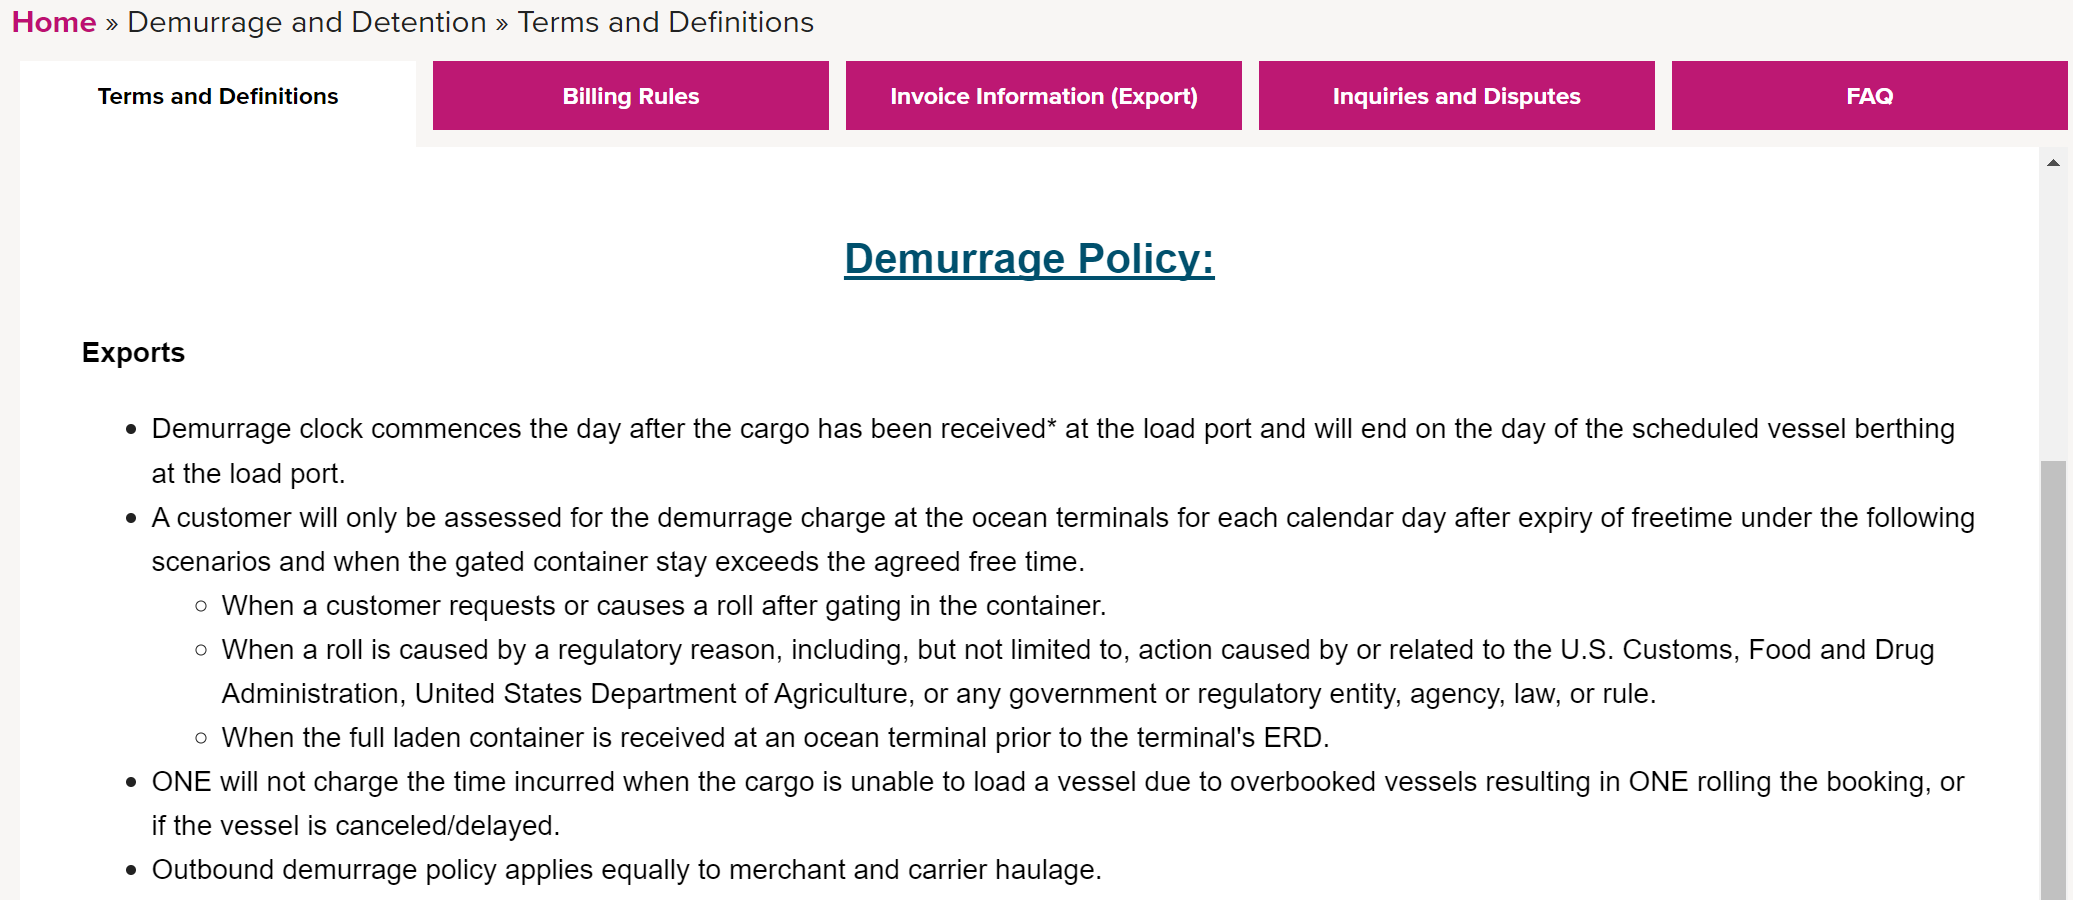 Demurrage / Detention